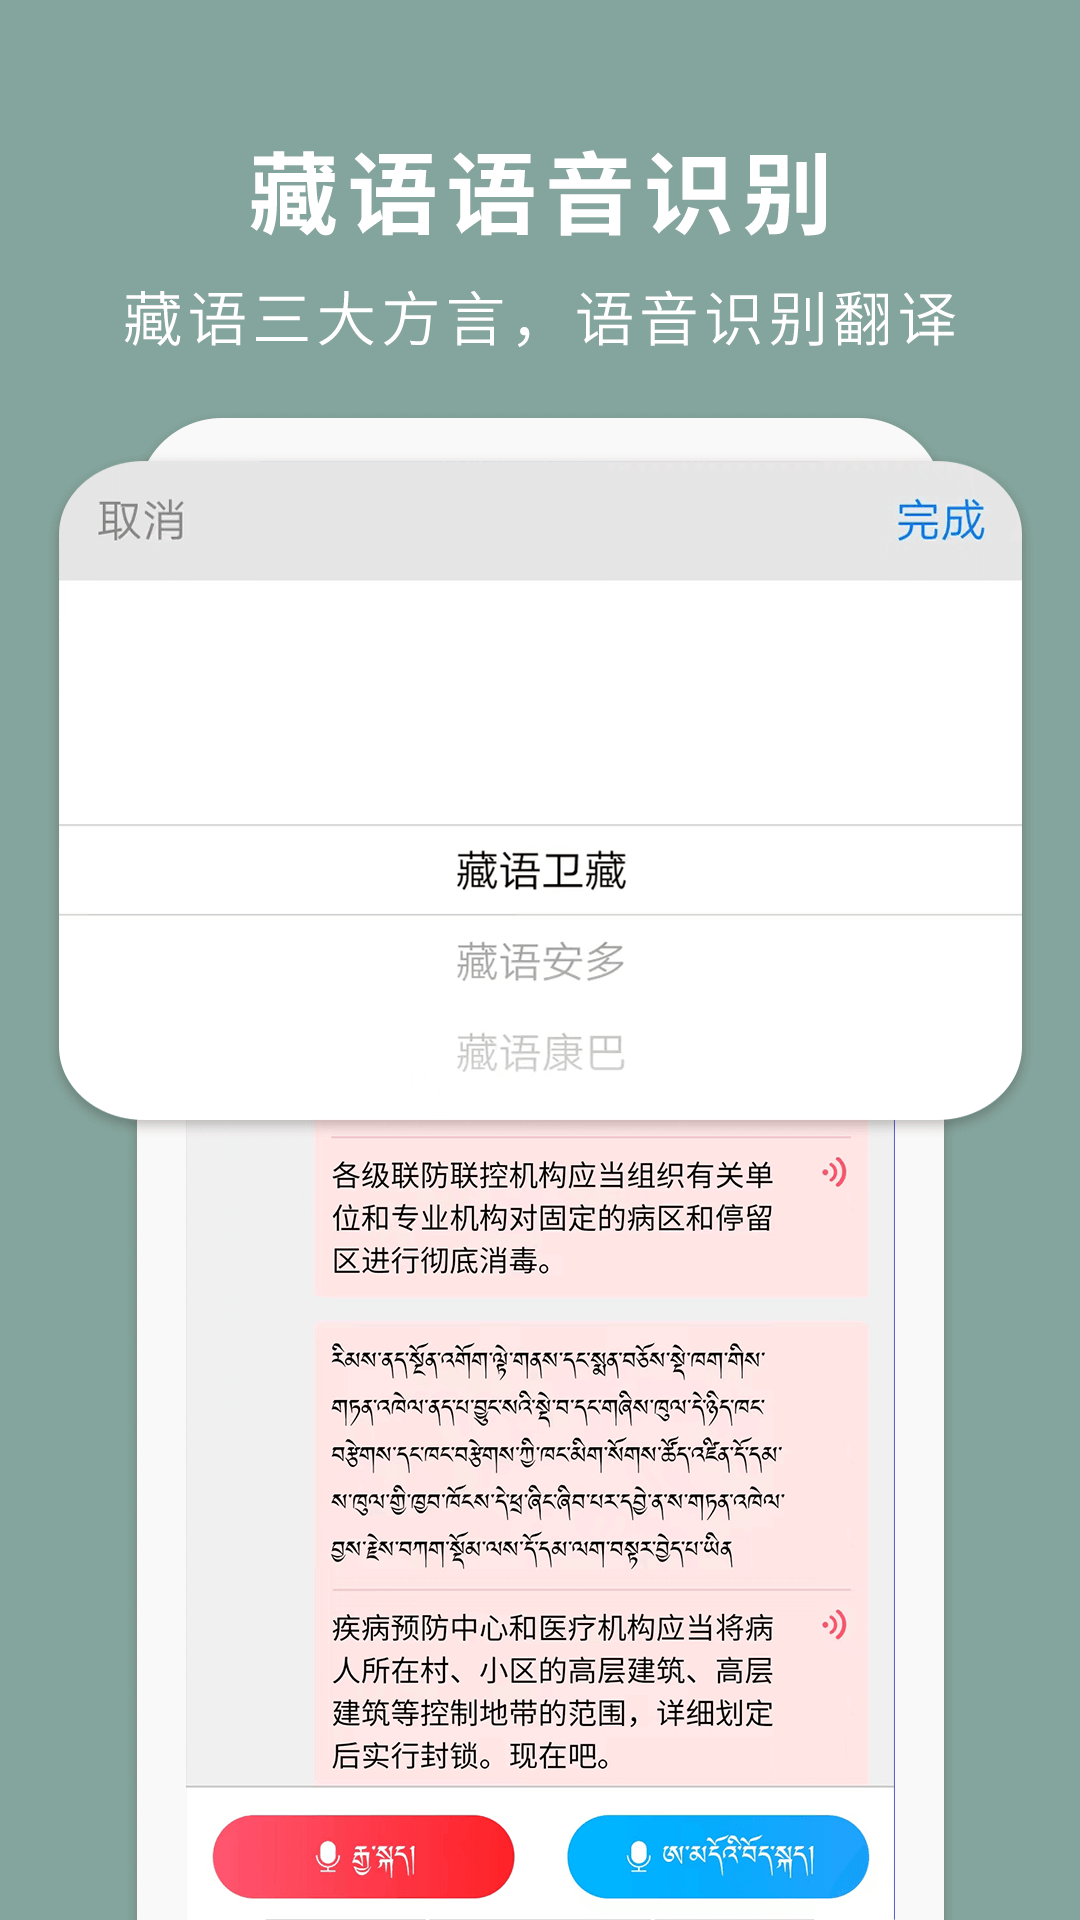 藏汉翻译通